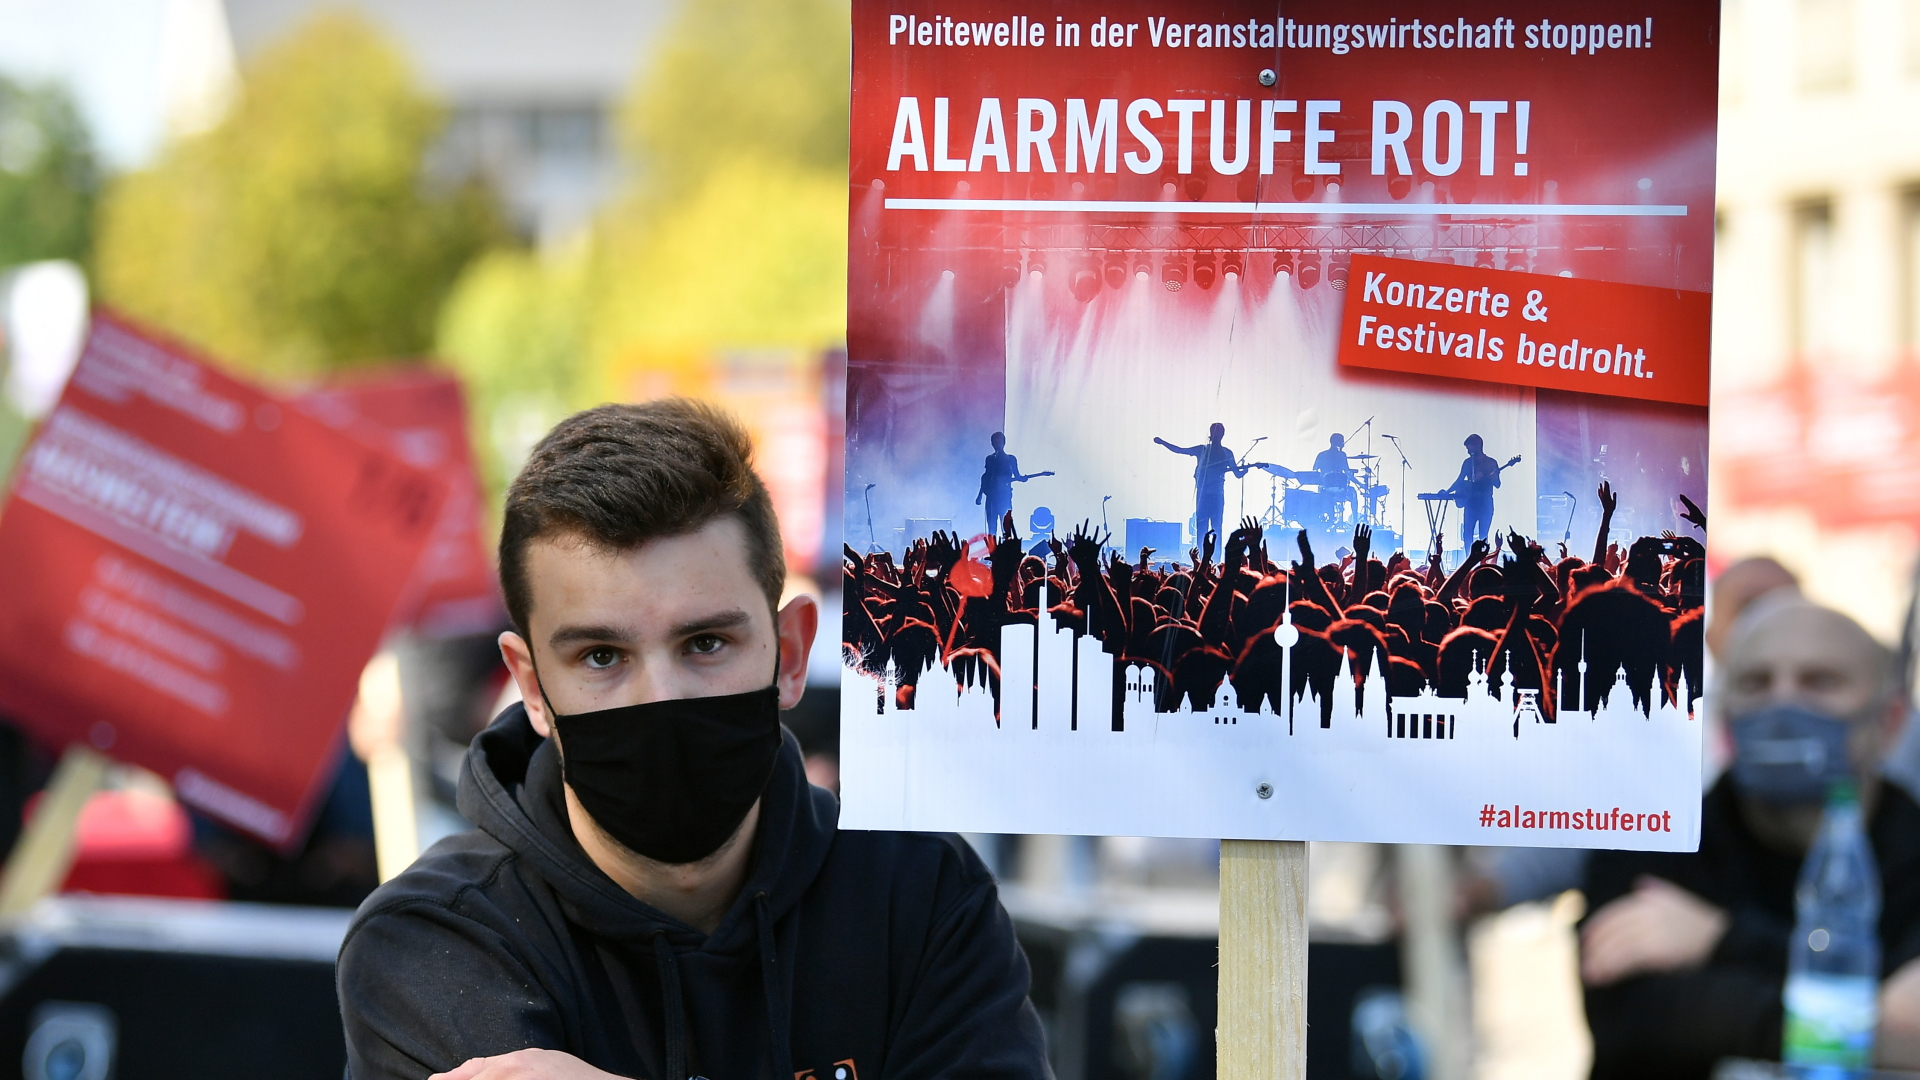 Großdemo in Berlin: Veranstaltungsbranche schlägt Alarm